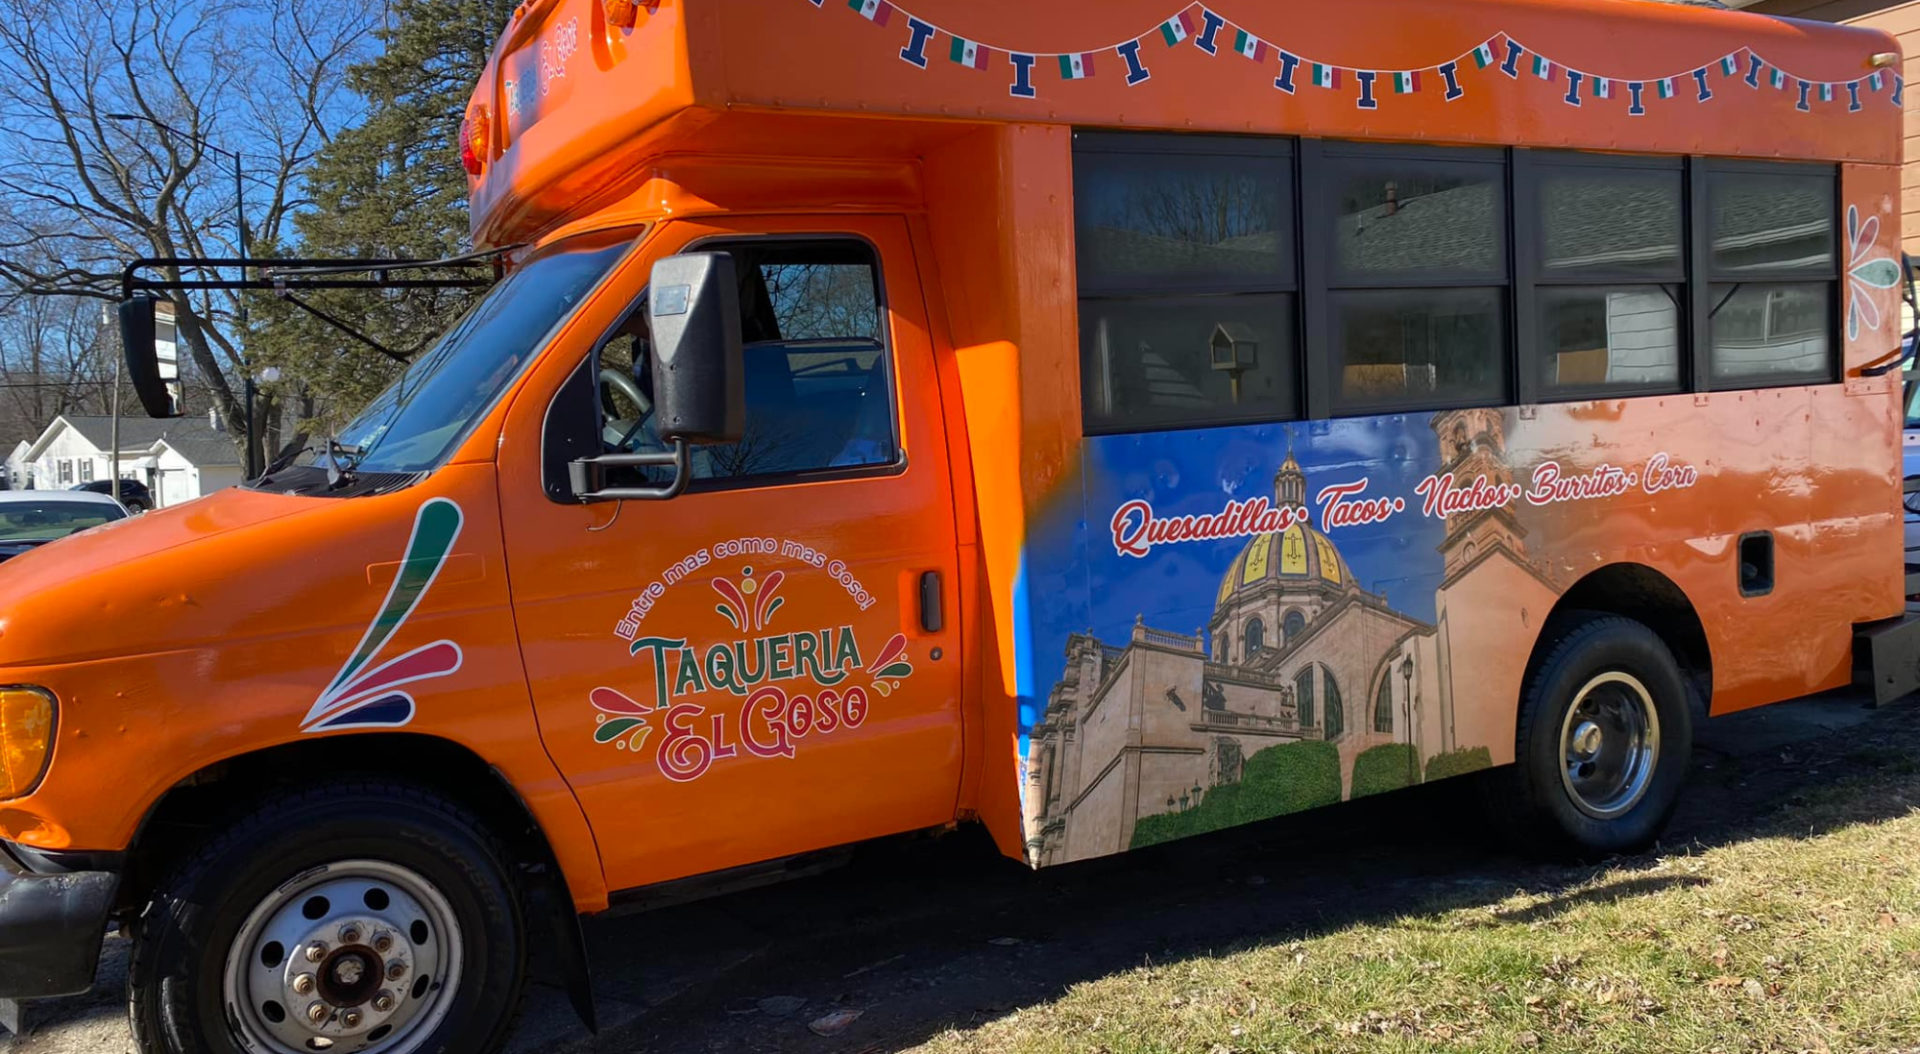 An orange food truck Taqueria El Goso- Entre is new to the Champaign-Urbana food scene.